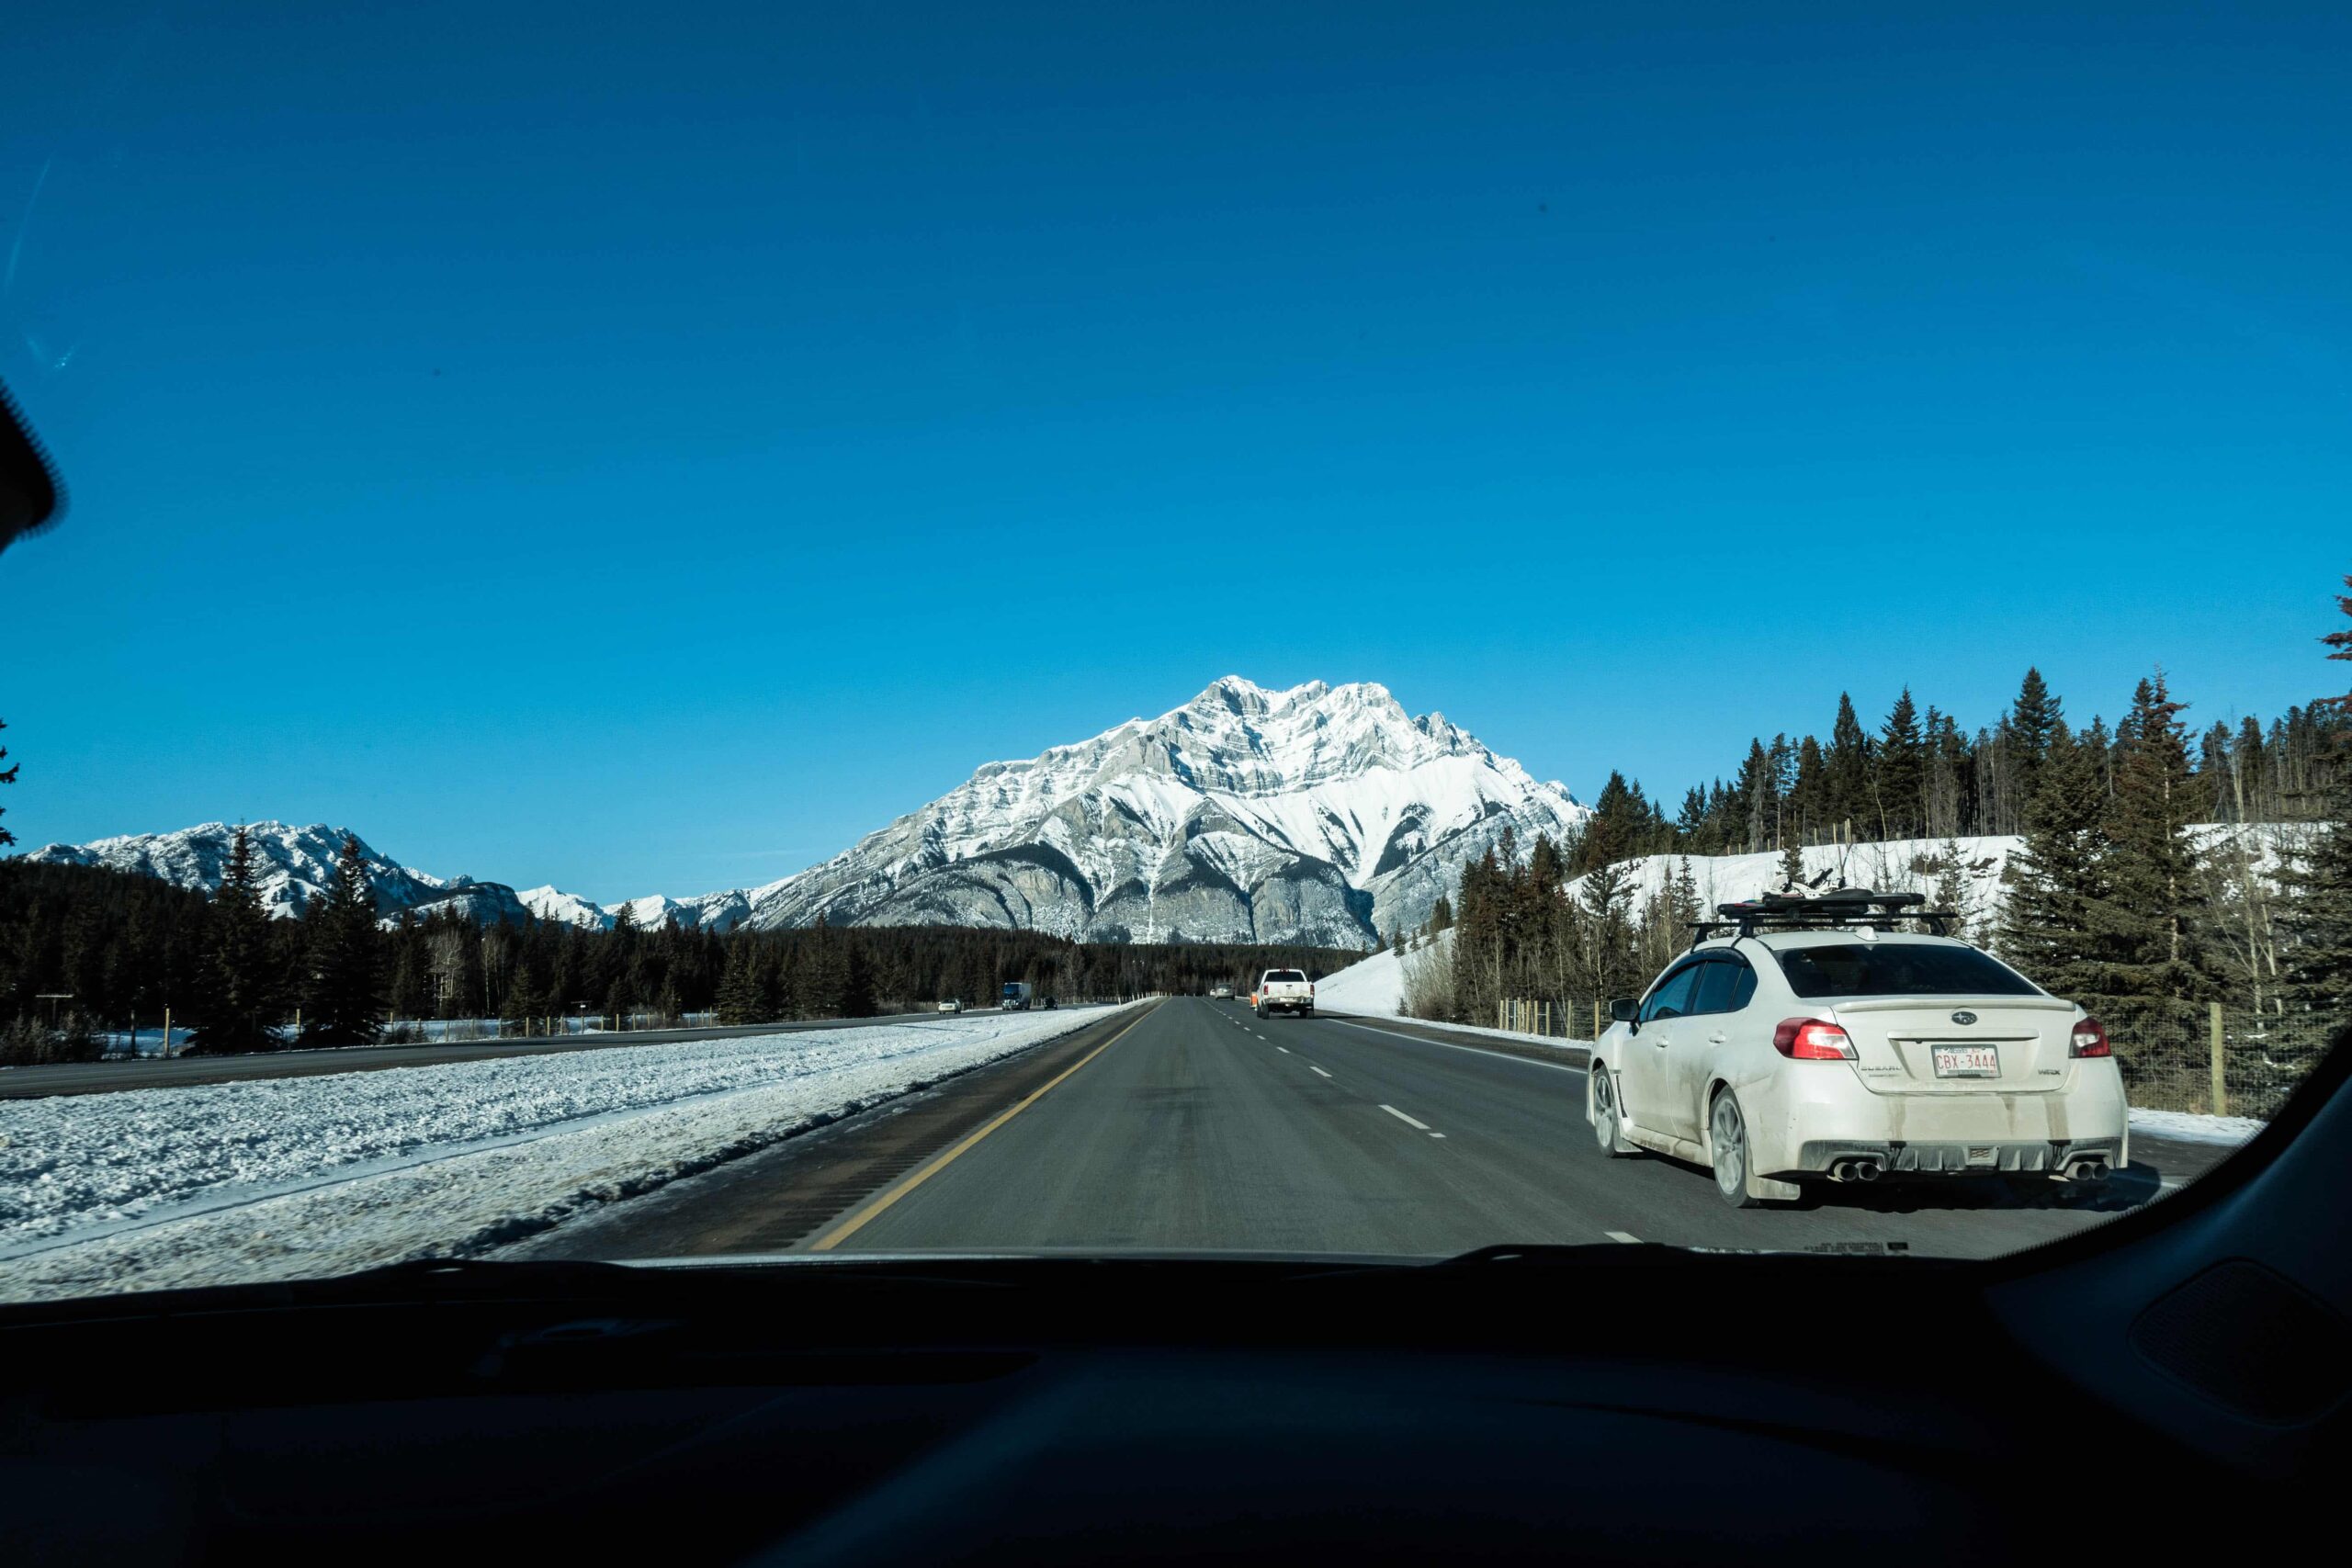 Banff to Lake Louise: By Car